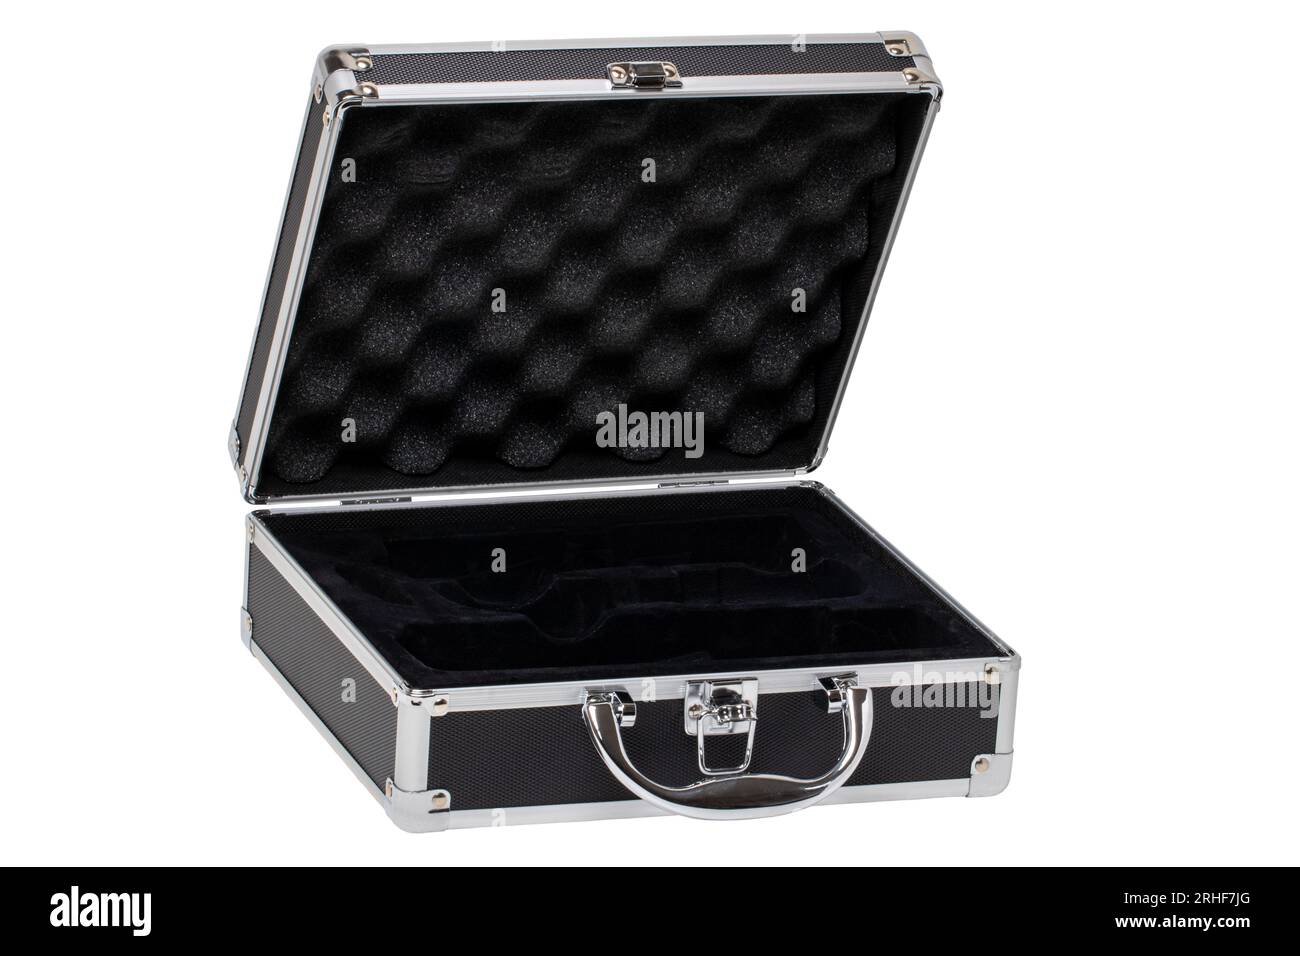 Gros plan d'une petite valise ou valise d'équipement en argent noir vide ouverte avec un loquet isolé sur un fond blanc. Masque. Banque D'Images